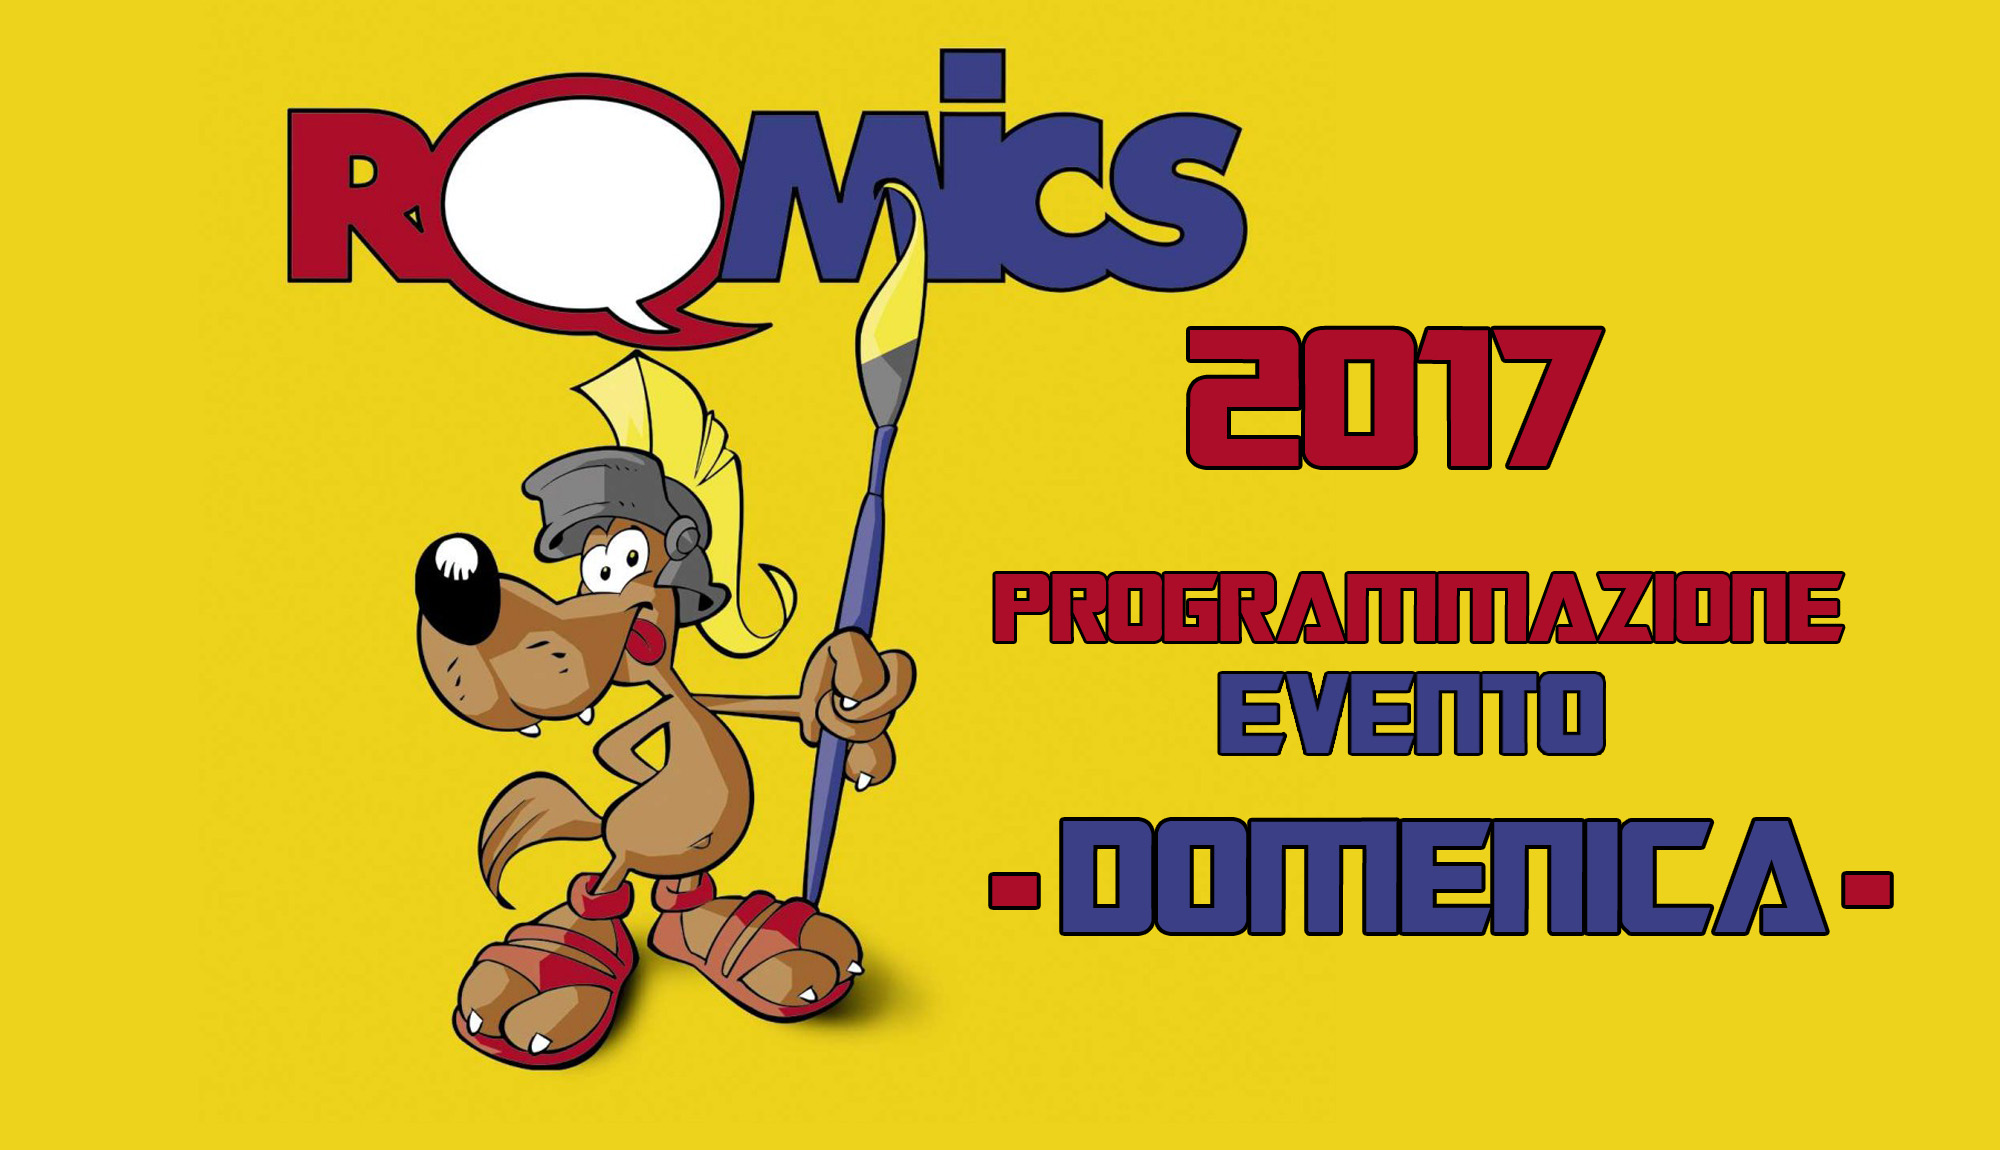 ﻿Romics 2017, domenica 9 aprile è il giorno di chiusura. Disponibile il calendario delle attività della Fiera